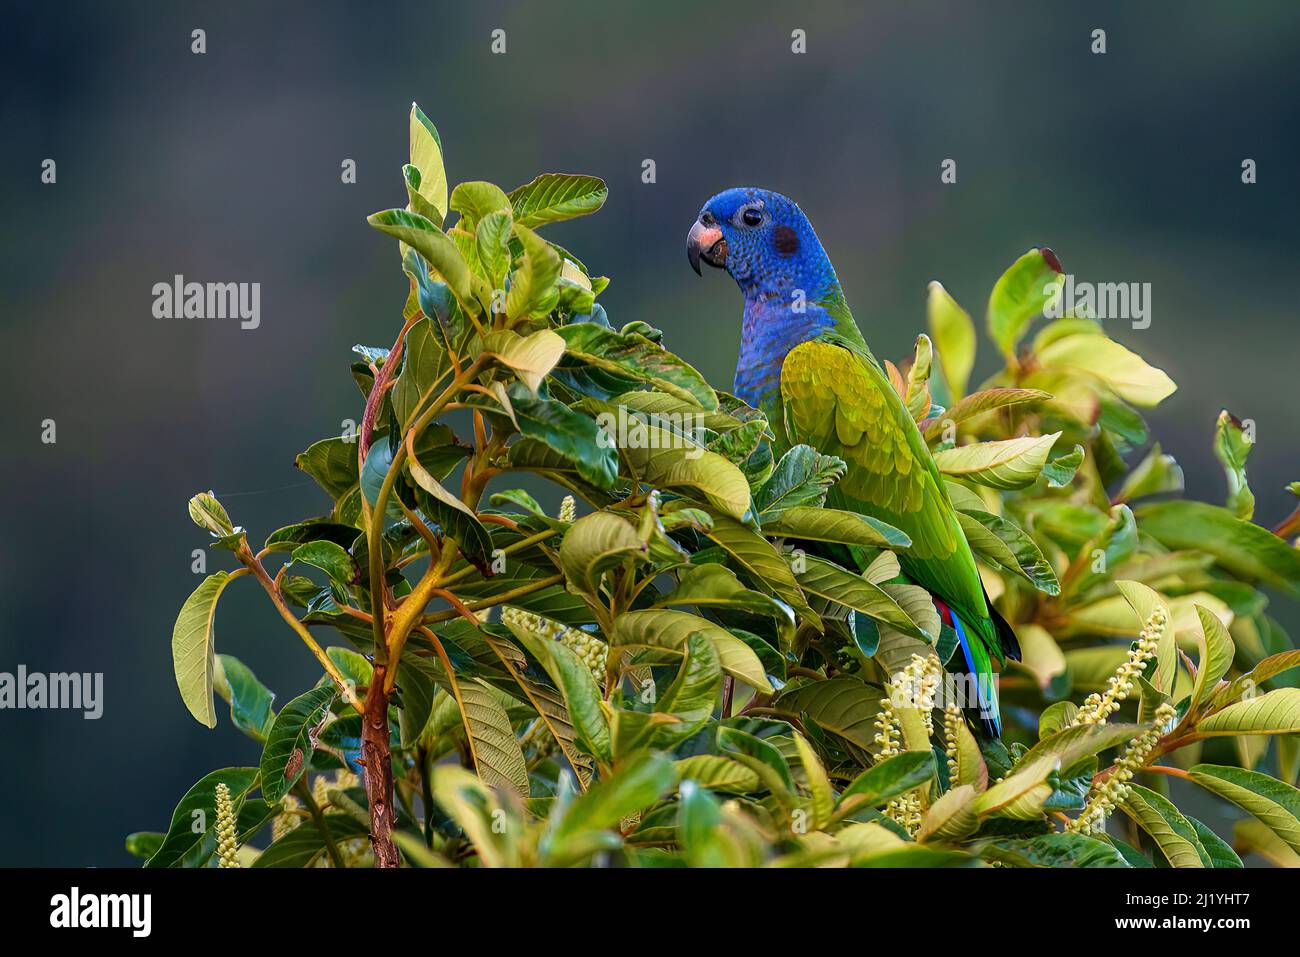 Magnifique perroquet à tête verte perché au sommet d'un arbre Banque D'Images